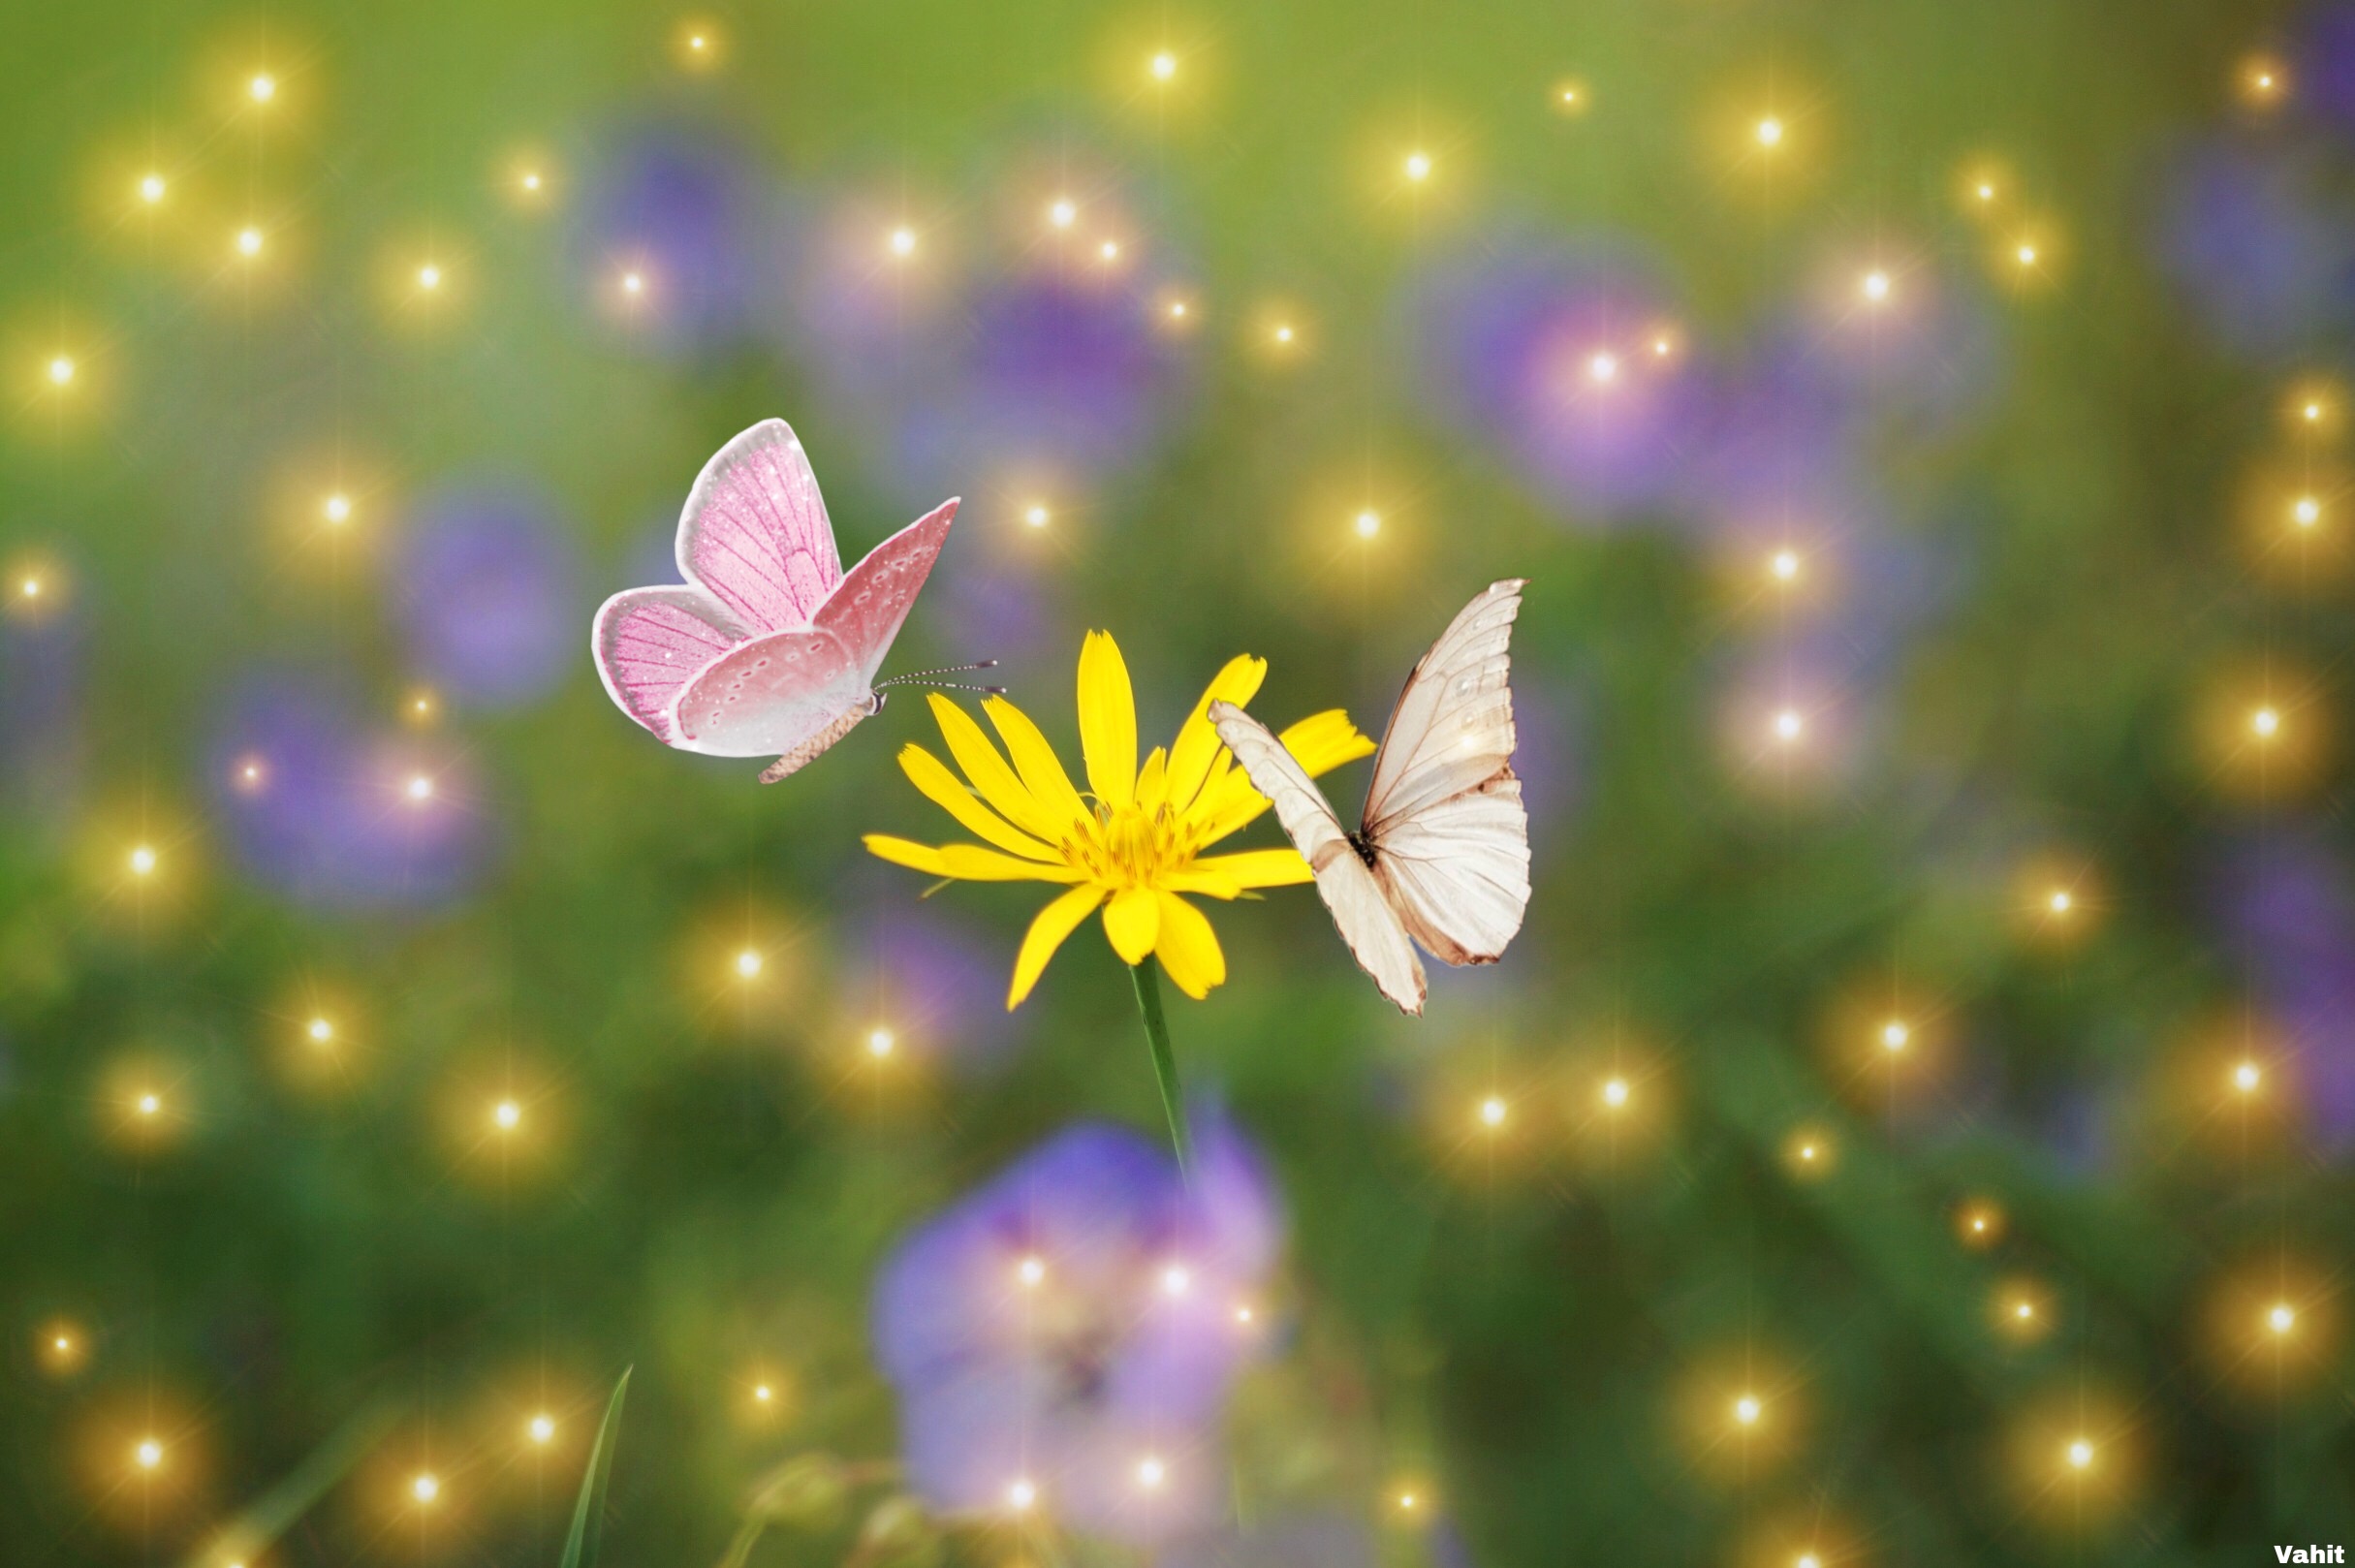 freetoedit yellow butterflies 271346006022201 by @aubsom